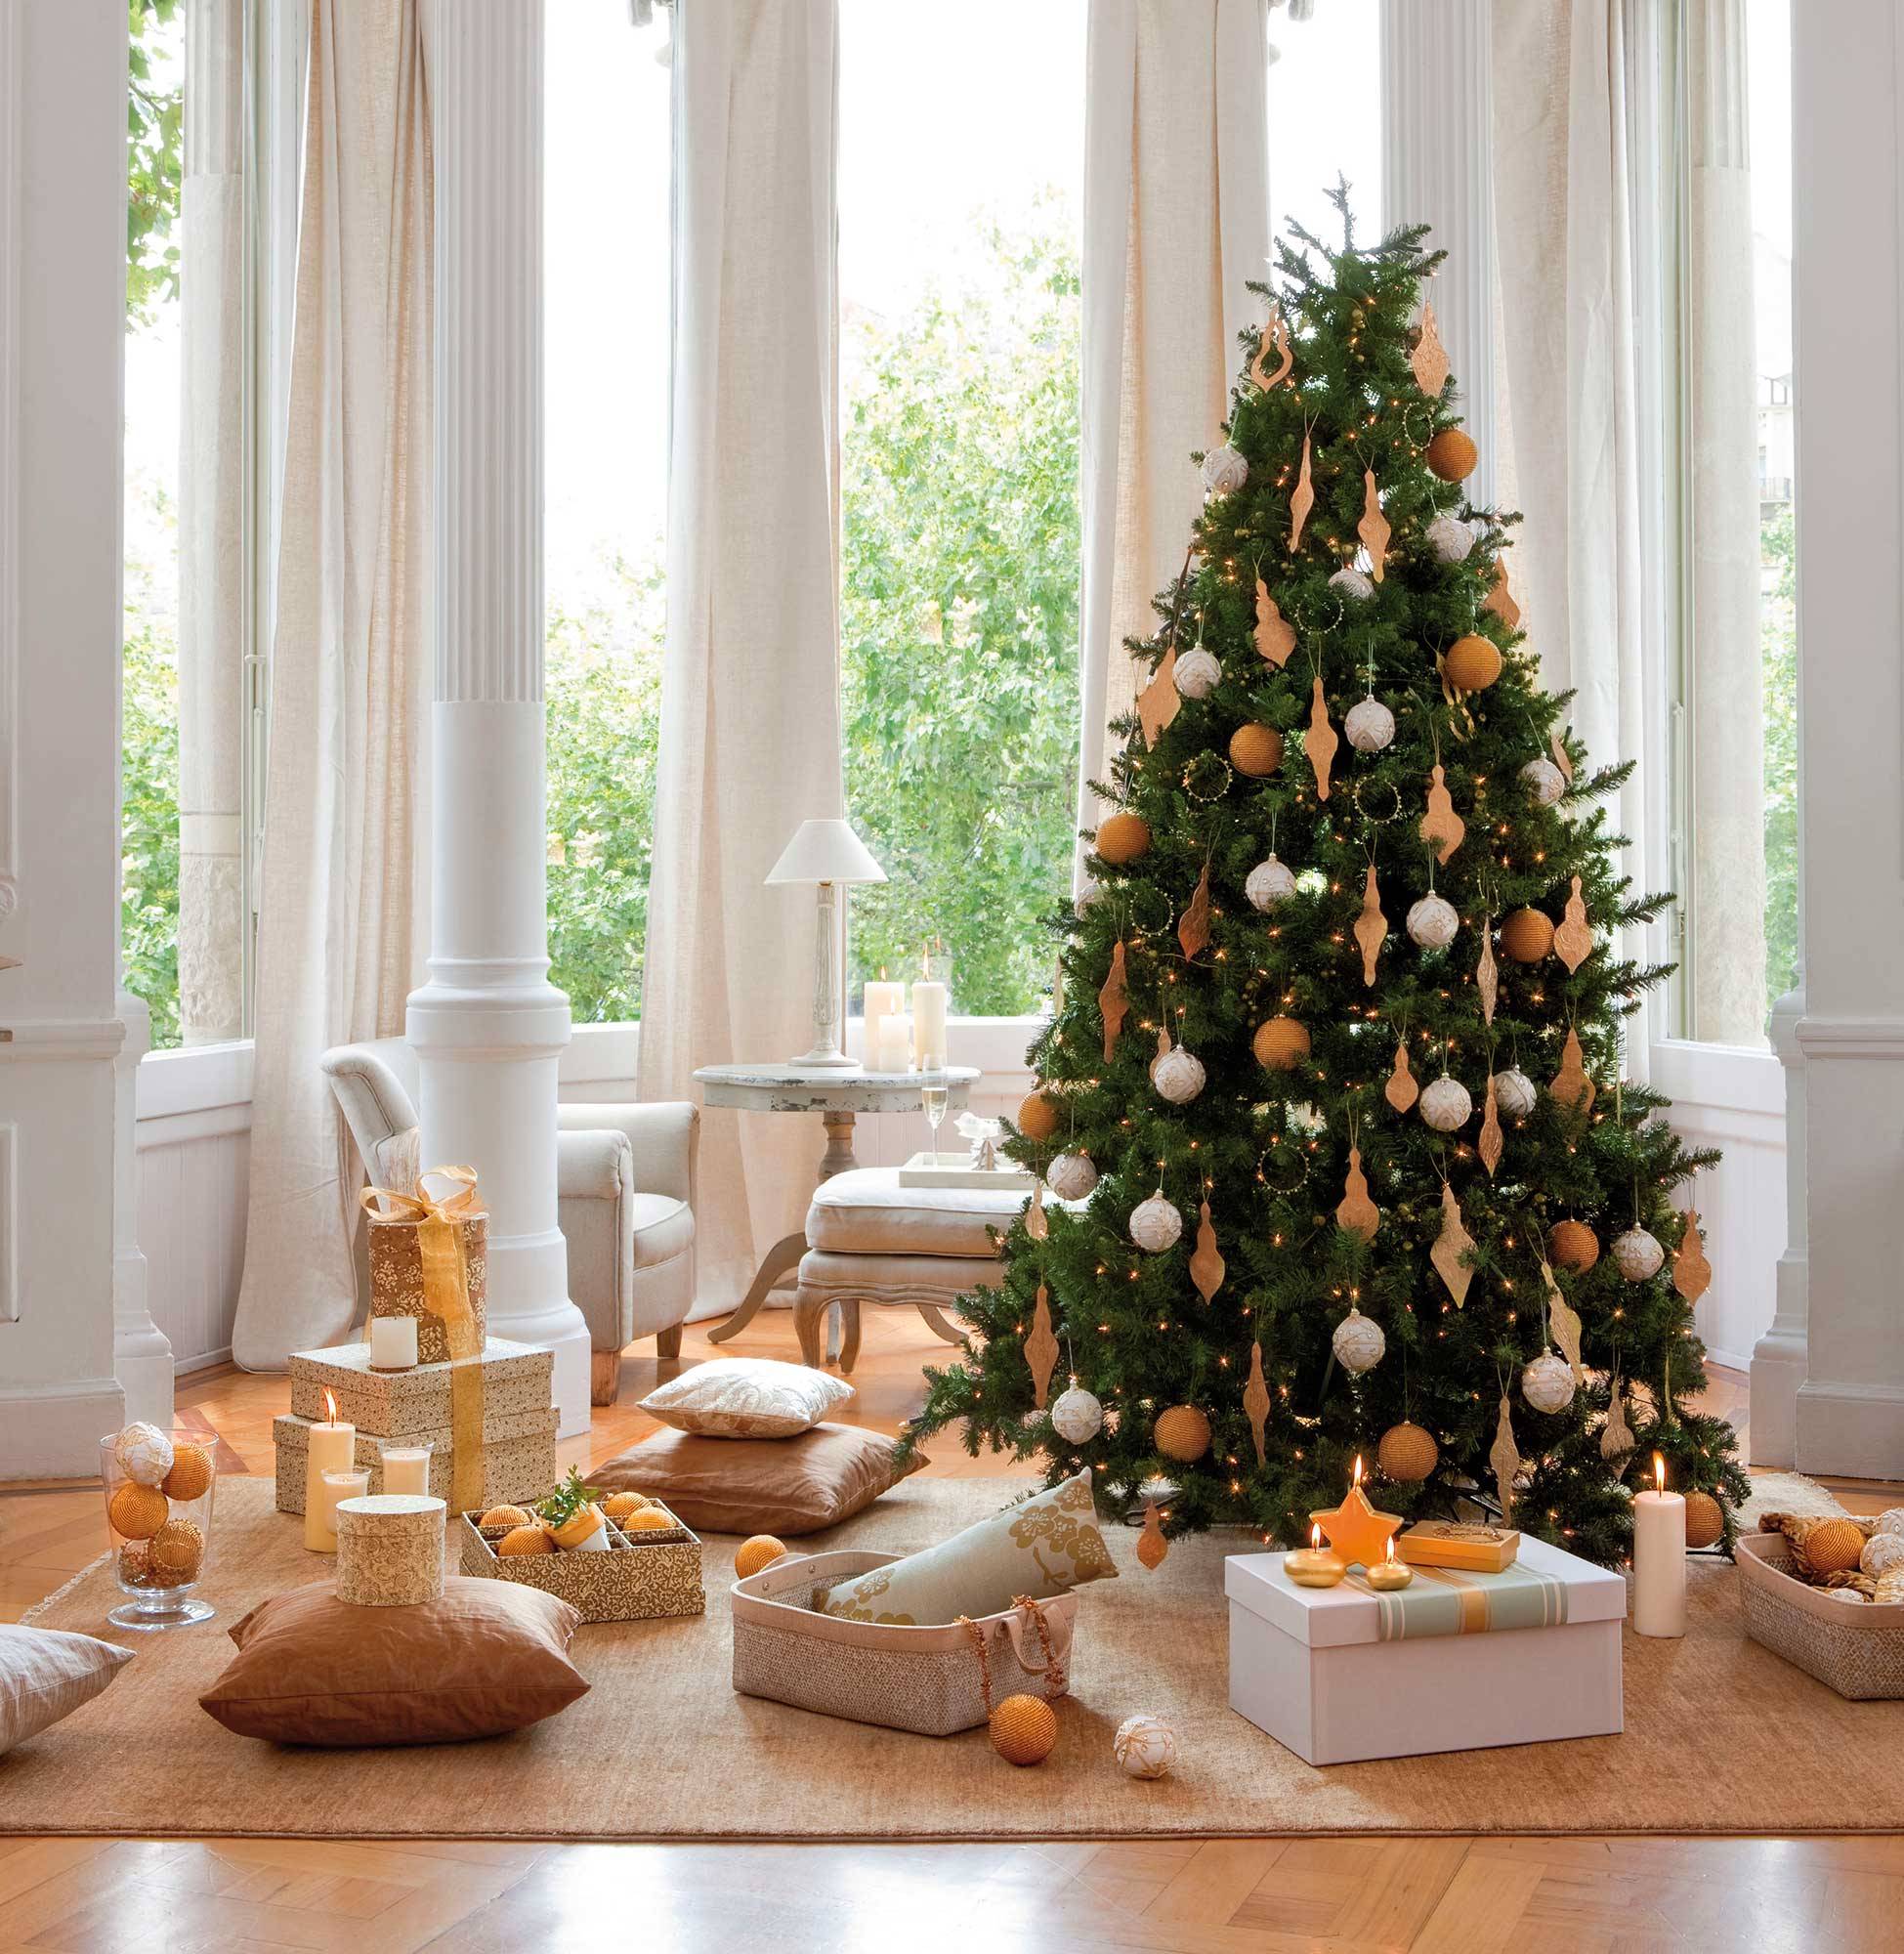 Salón blanco y clásico con árbol de Navidad decorado con bolas blancas y doradas.